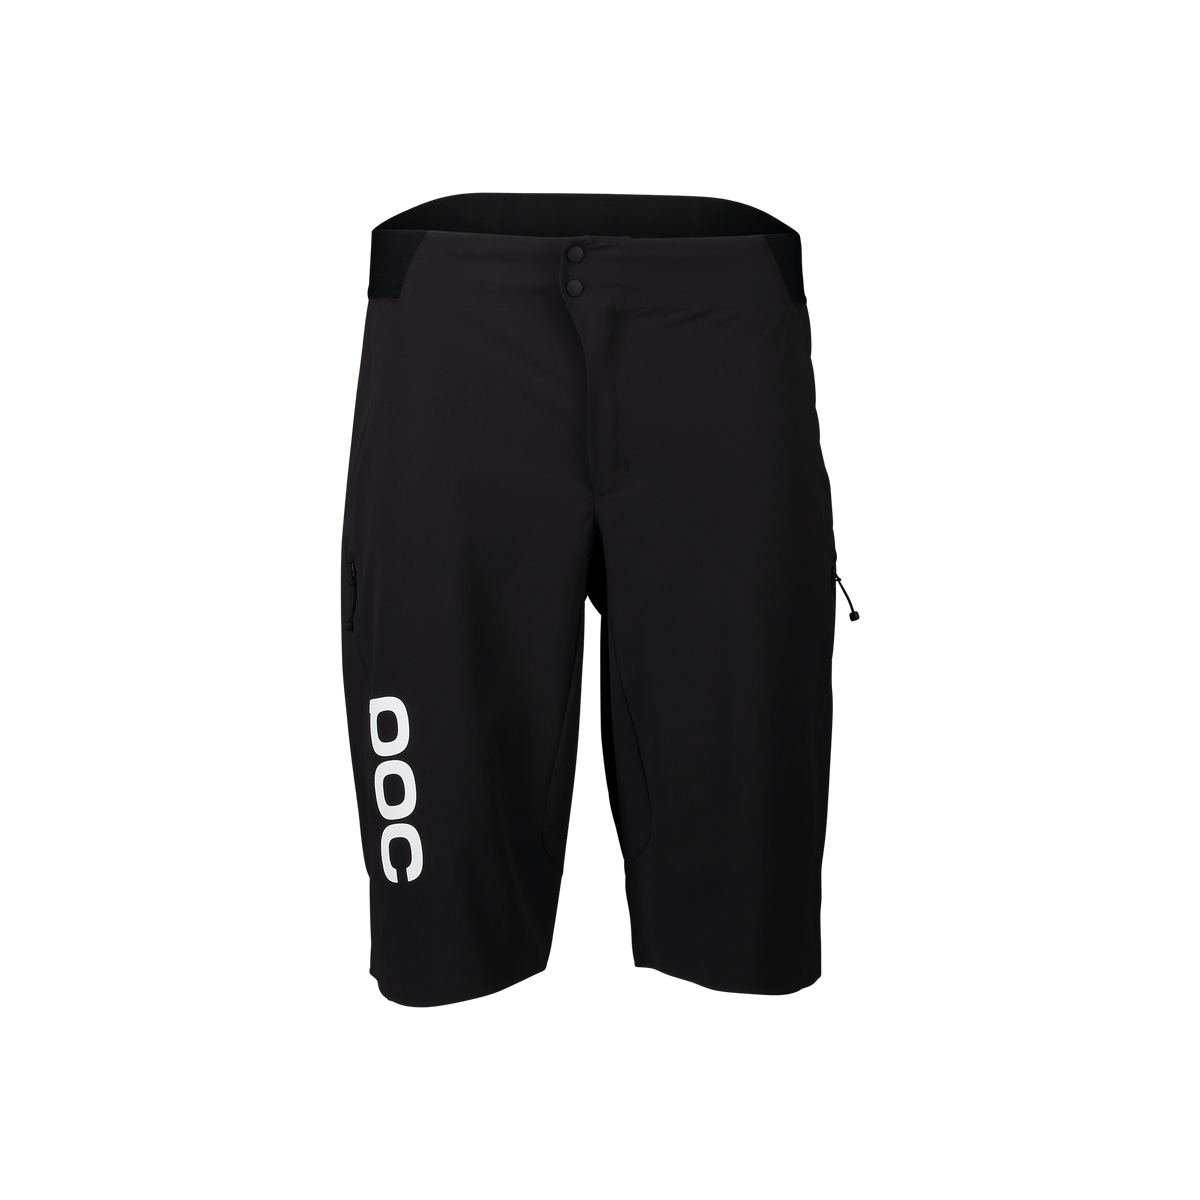 POC Men's Re-Cycle Boxer Shorts